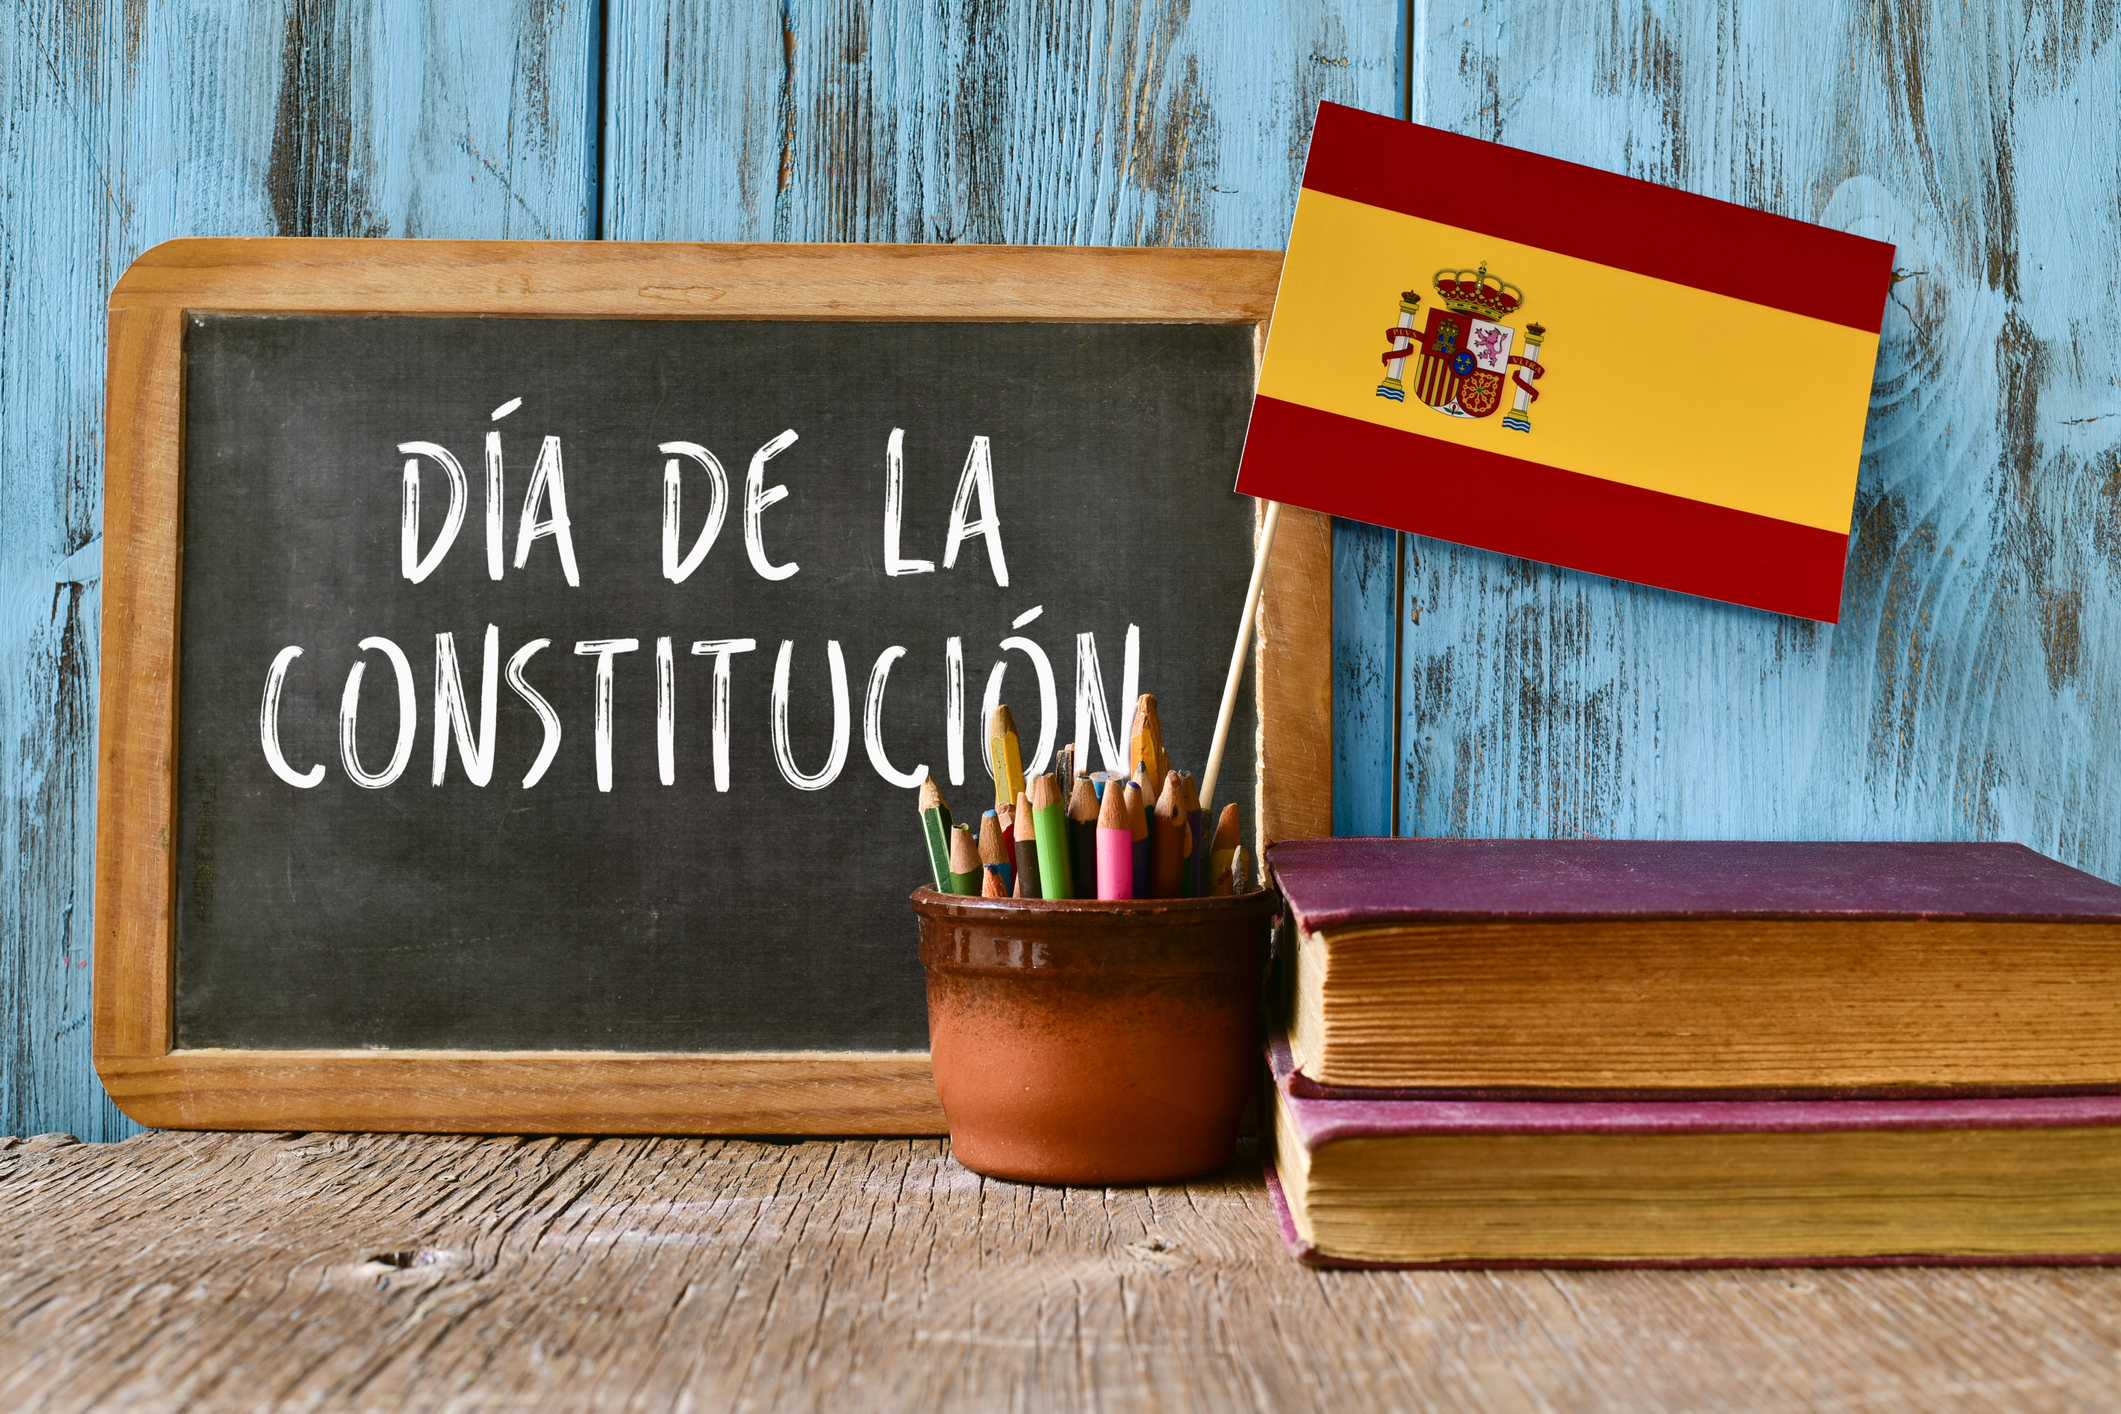 Día de la Constitución española - Horno Al-Madain